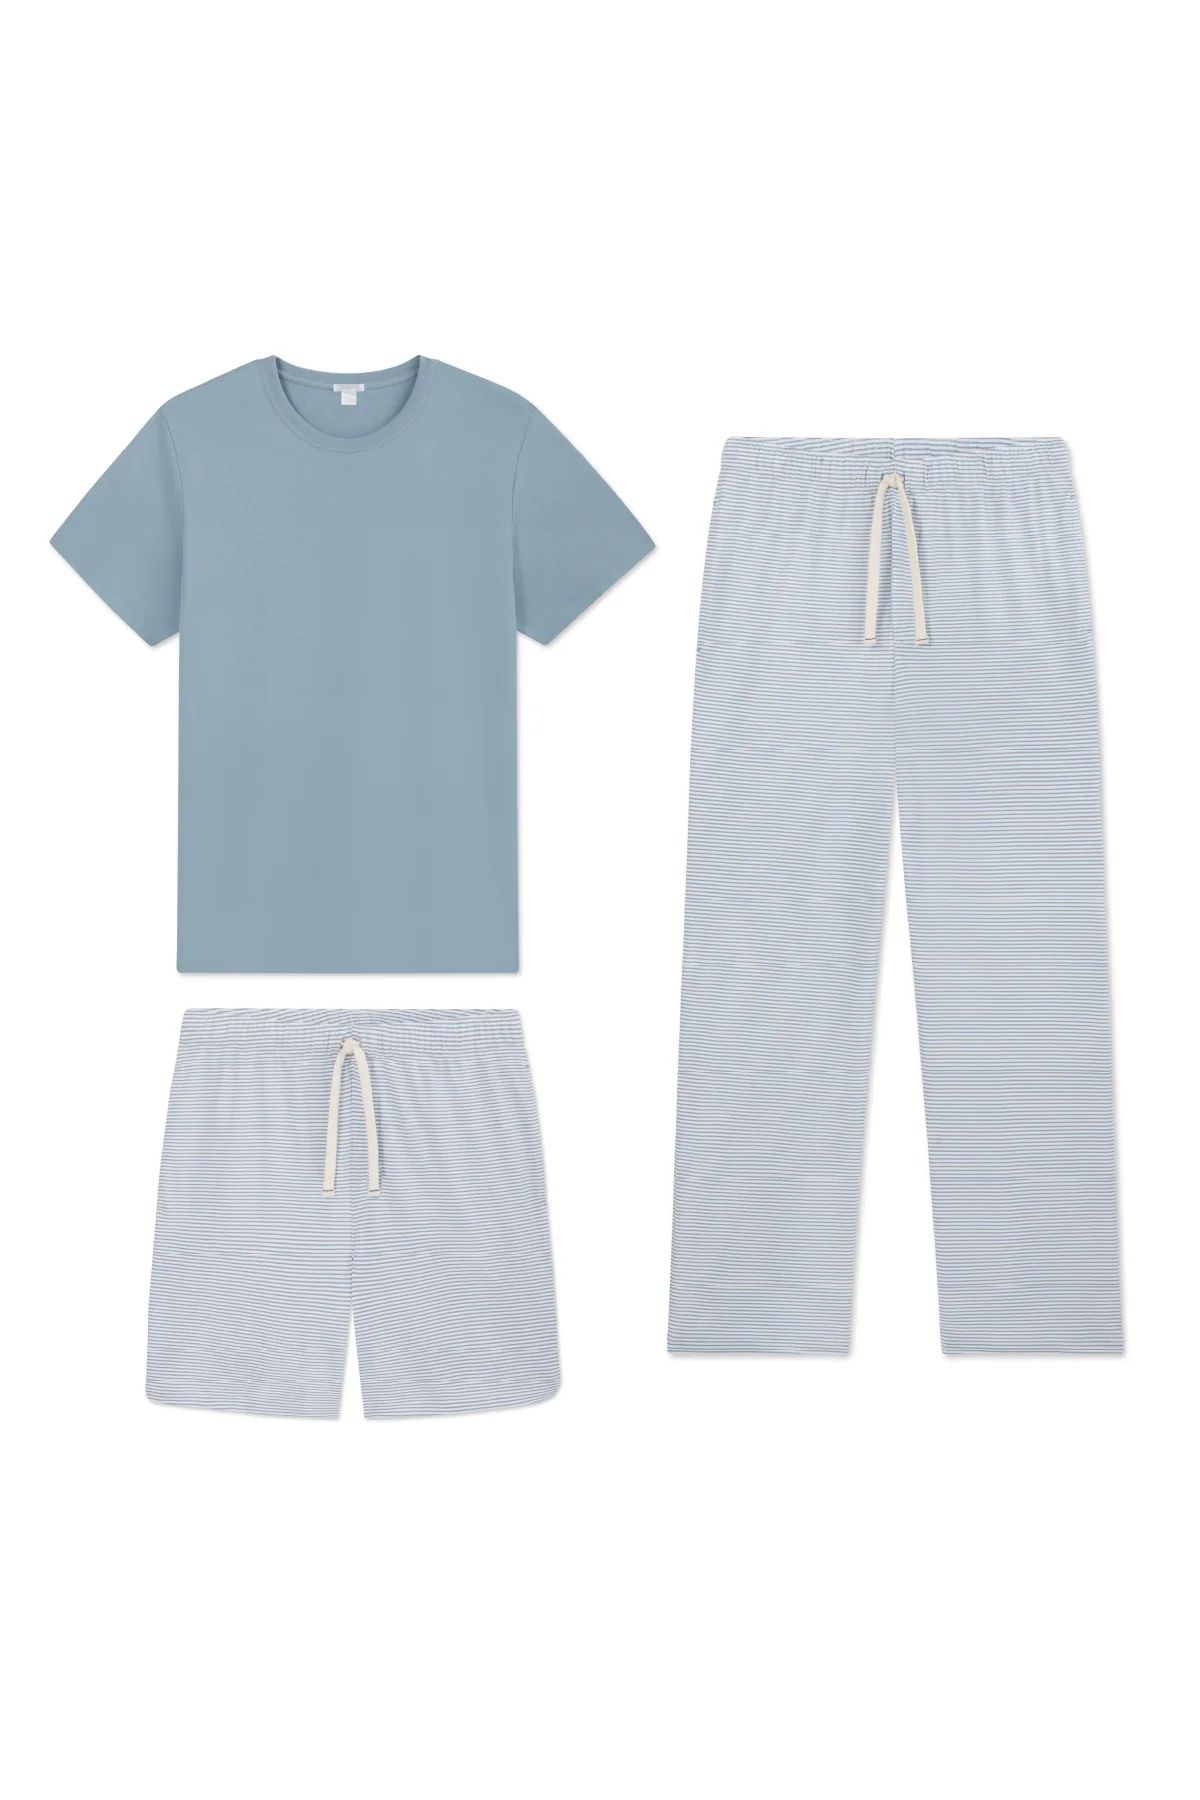 Men's Pima Sleep Bundle in Anchor Blue Bar Stripe | Lake Pajamas